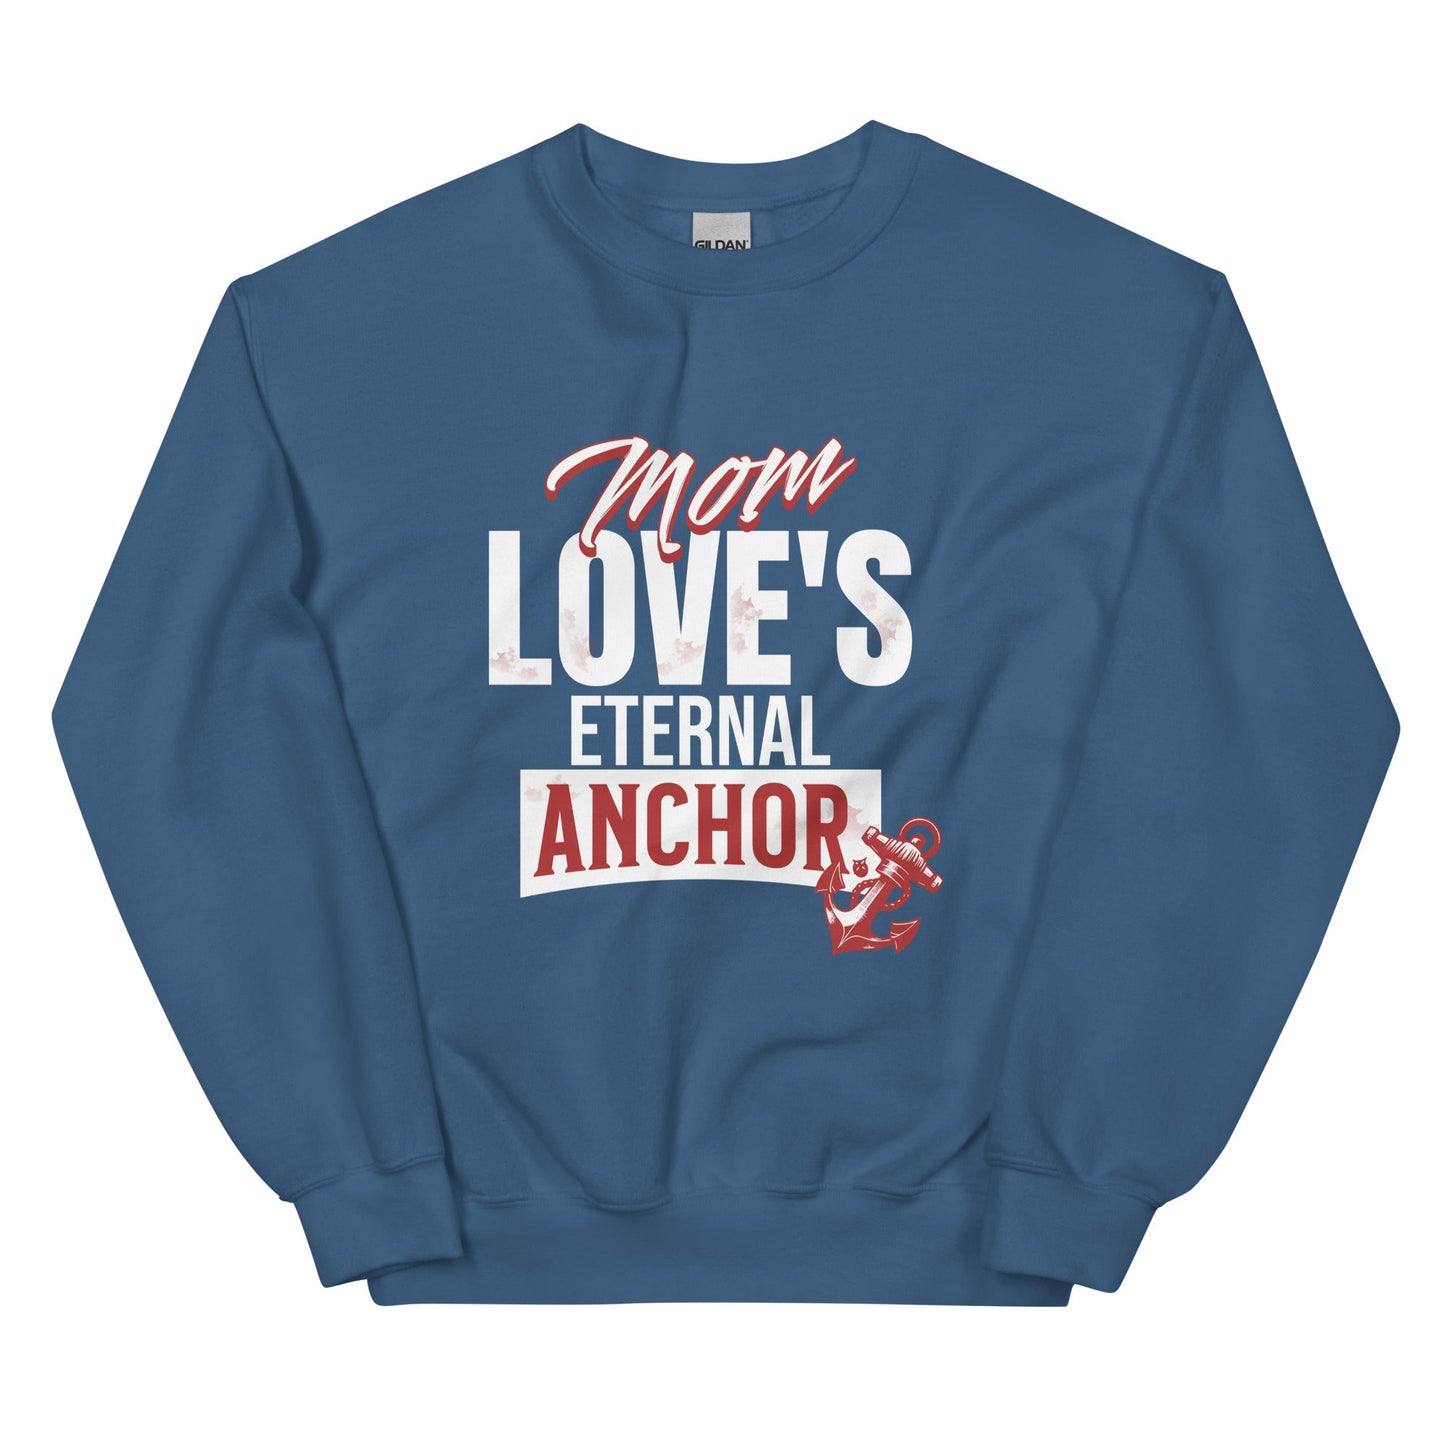 Mom Love's Eternal Anchor Sweatshirt-Indigo Blue-S-mysticalcherry